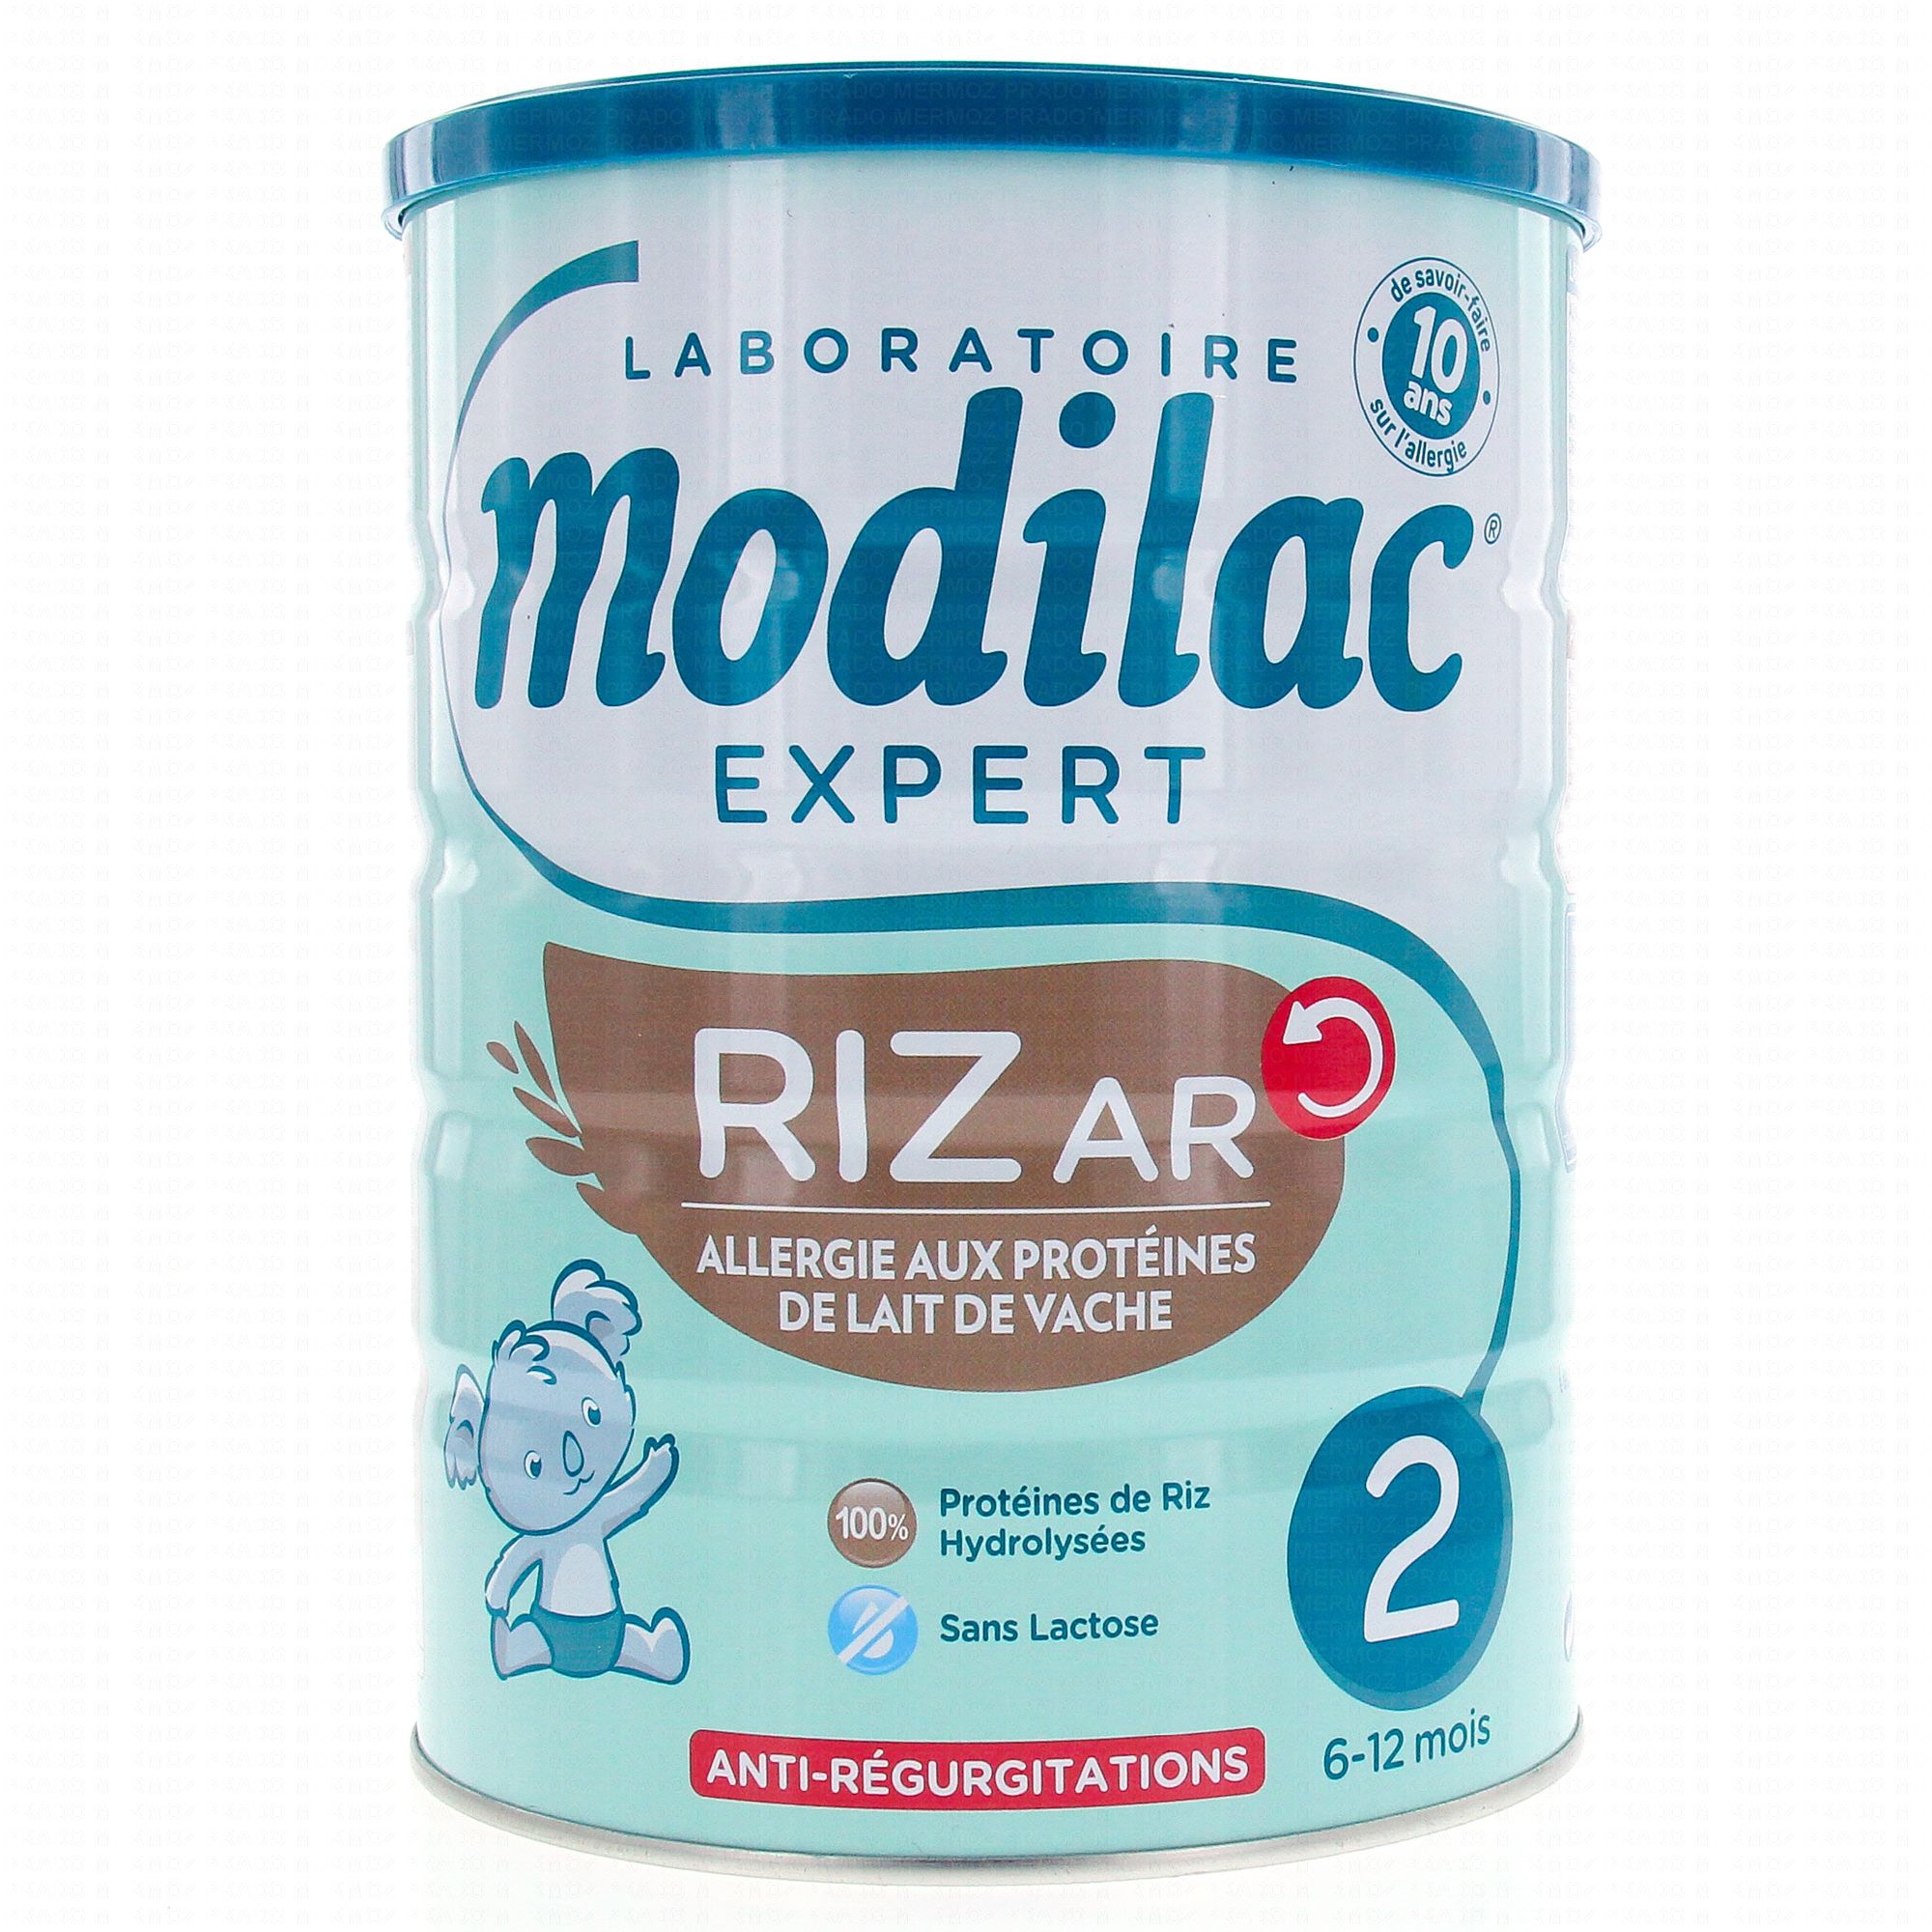 NOVALAC Riz - 0 à 36 mois - Alternative végétale - Sans lactose - Pot 800g